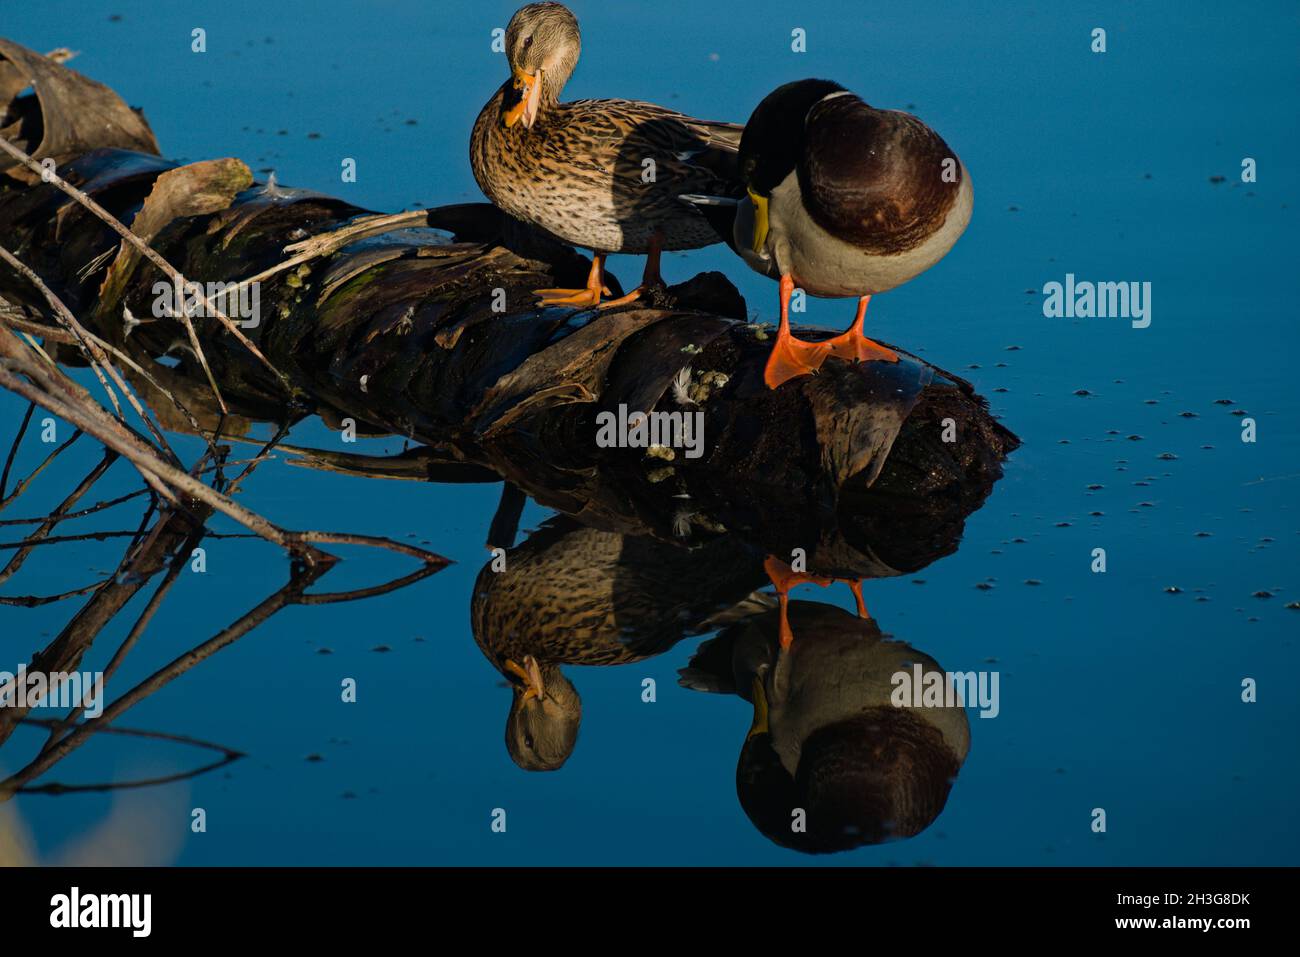 Das Leben spiegelt sich wider, ein paar Enten sitzen auf dem Holz im Wasser. Studium von Nähe, Unterschieden, Cowmanship und Freunden. Express Living. Stockfoto